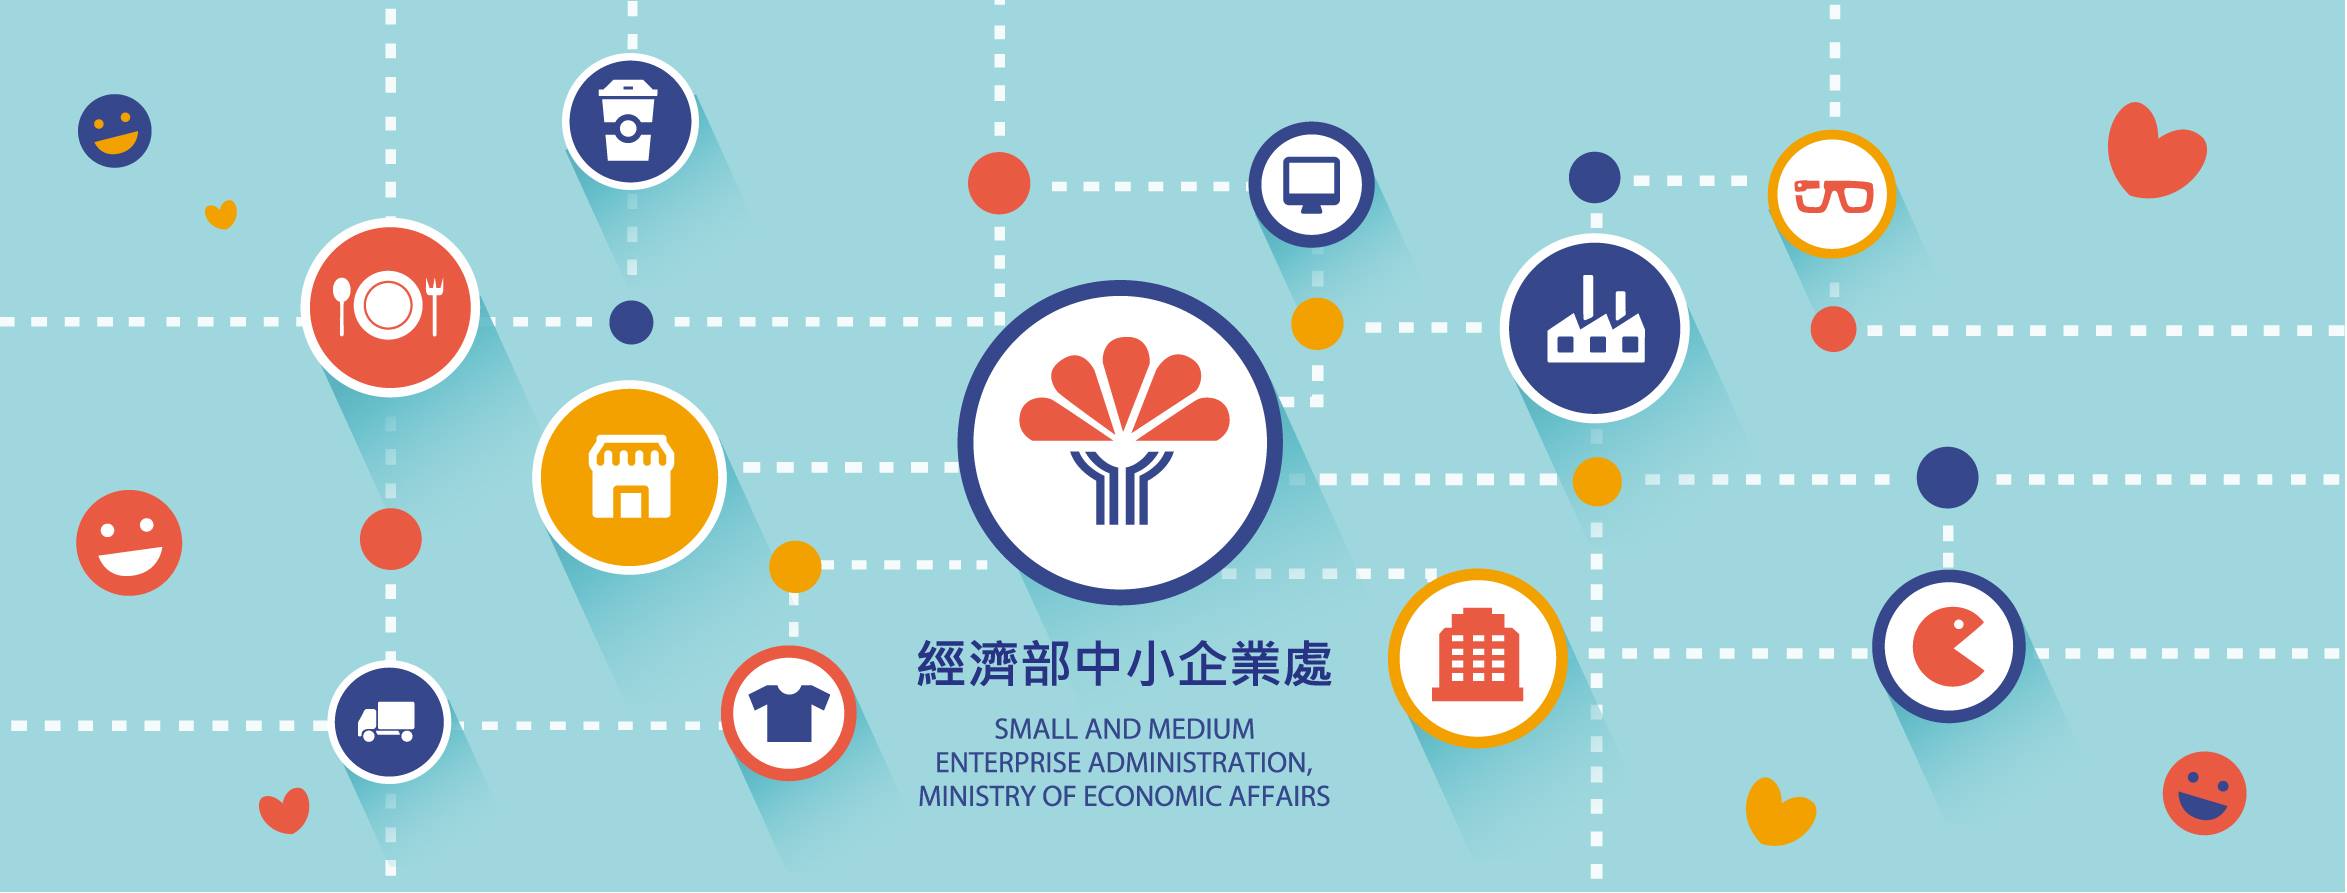 與時俱進，經濟部規劃精進育成，以鏈結資源，打造創新台灣